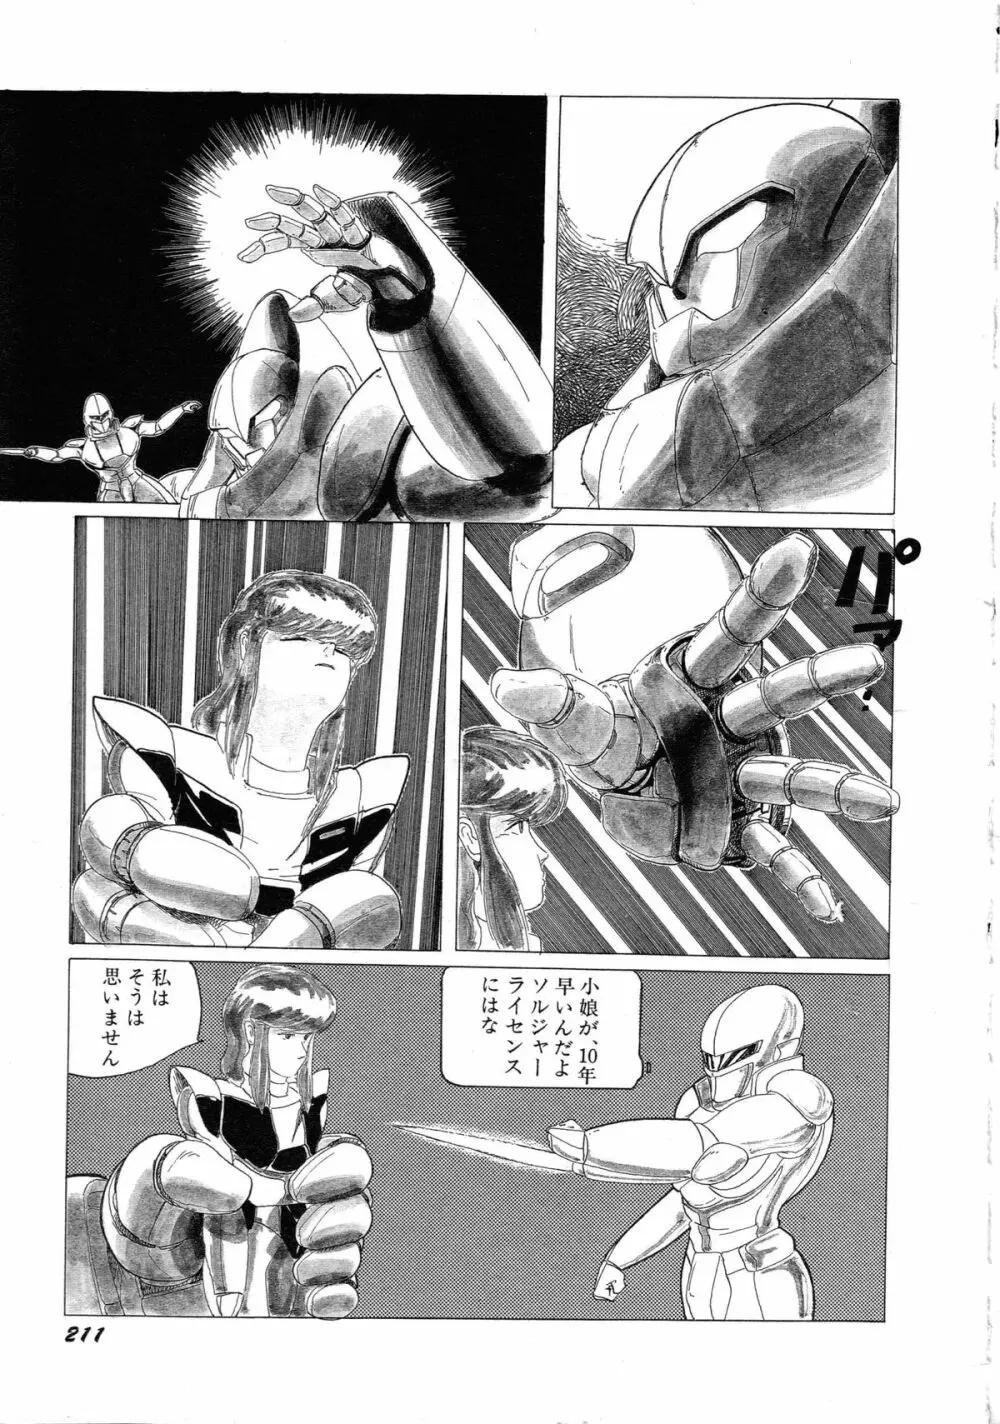 ロボット&美少女傑作選 レモン・ピープル1982-1986 215ページ